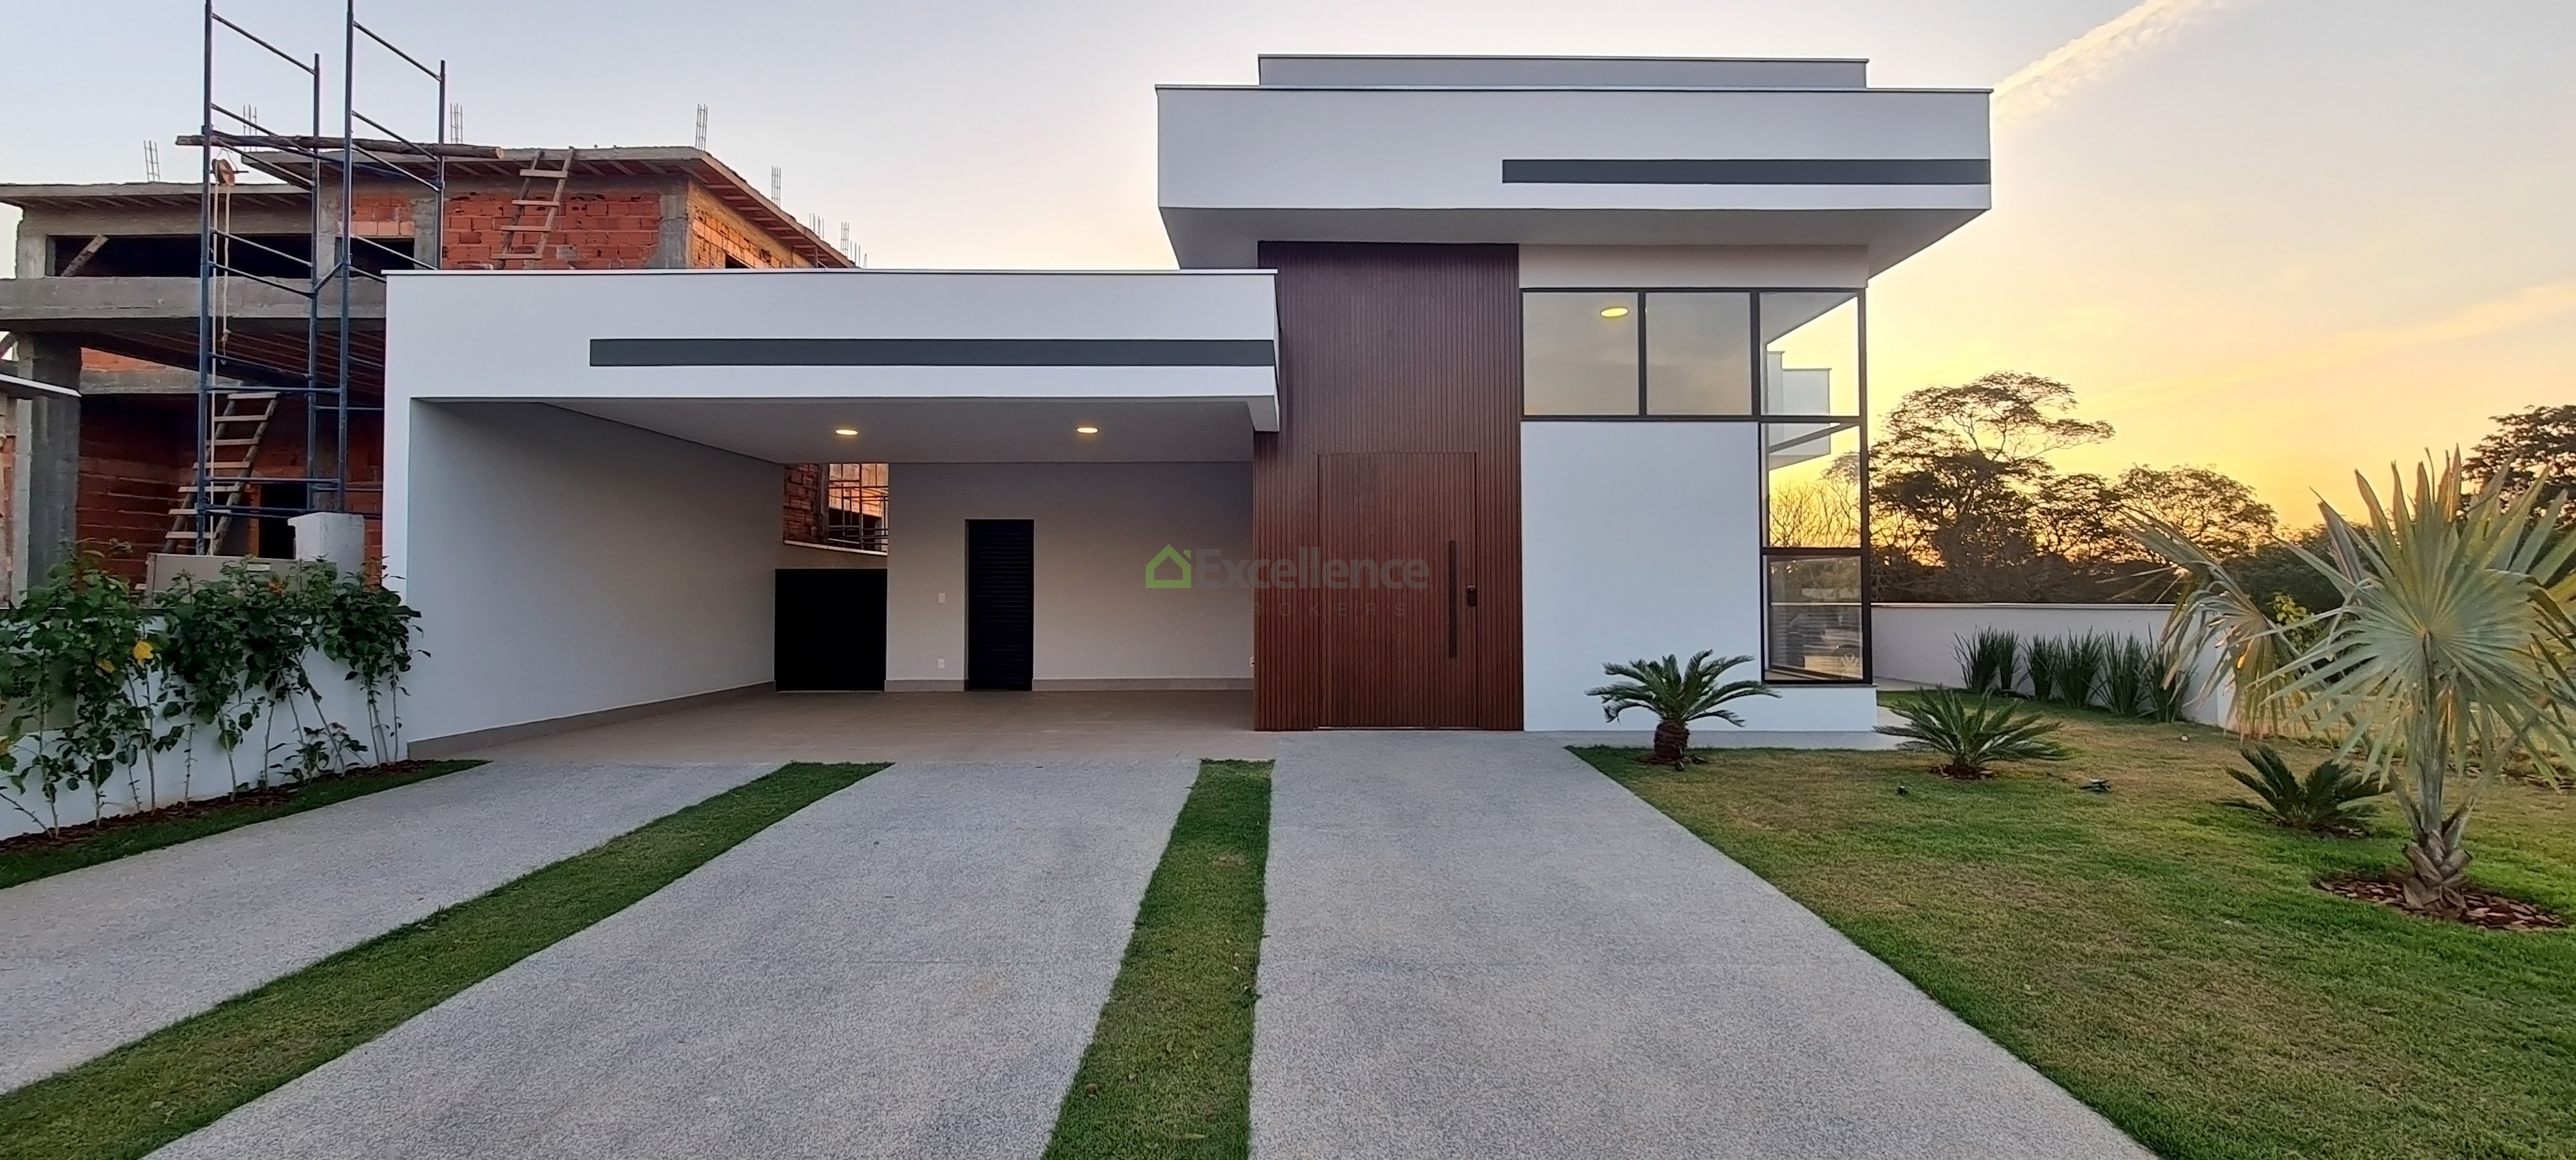 Casas de Condomínio de 65 m2 à venda em São Paulo, SP - ZAP Imóveis